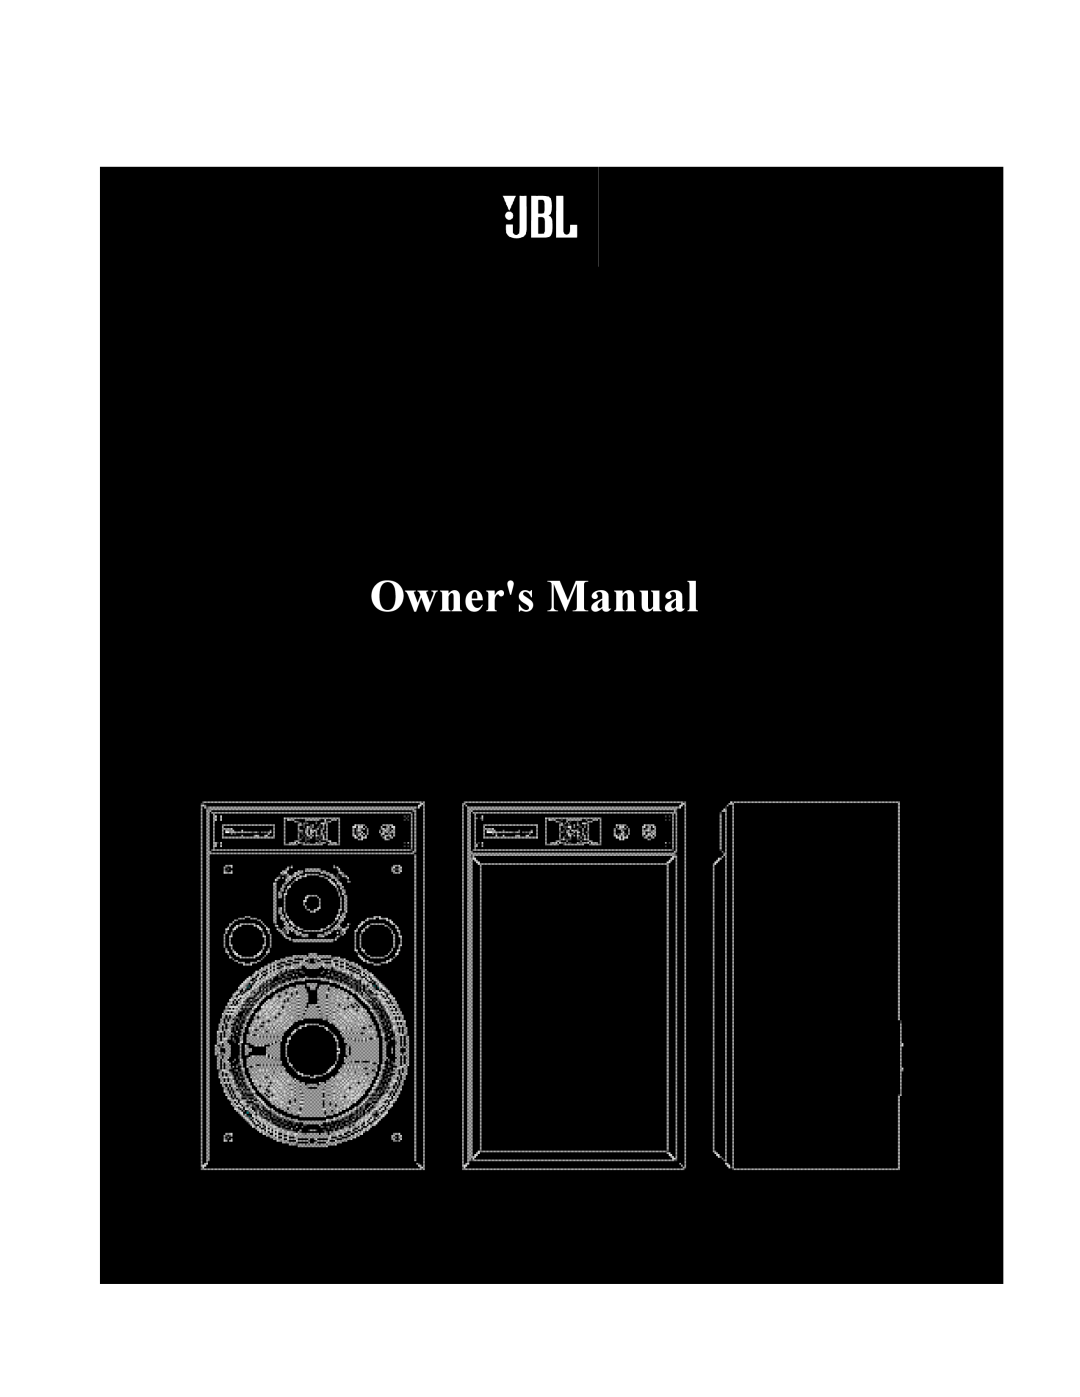 JBL 4318 owner manual Model, Owners Manual, JBL Incorporated, Inch 3-Way Studio Monitor 